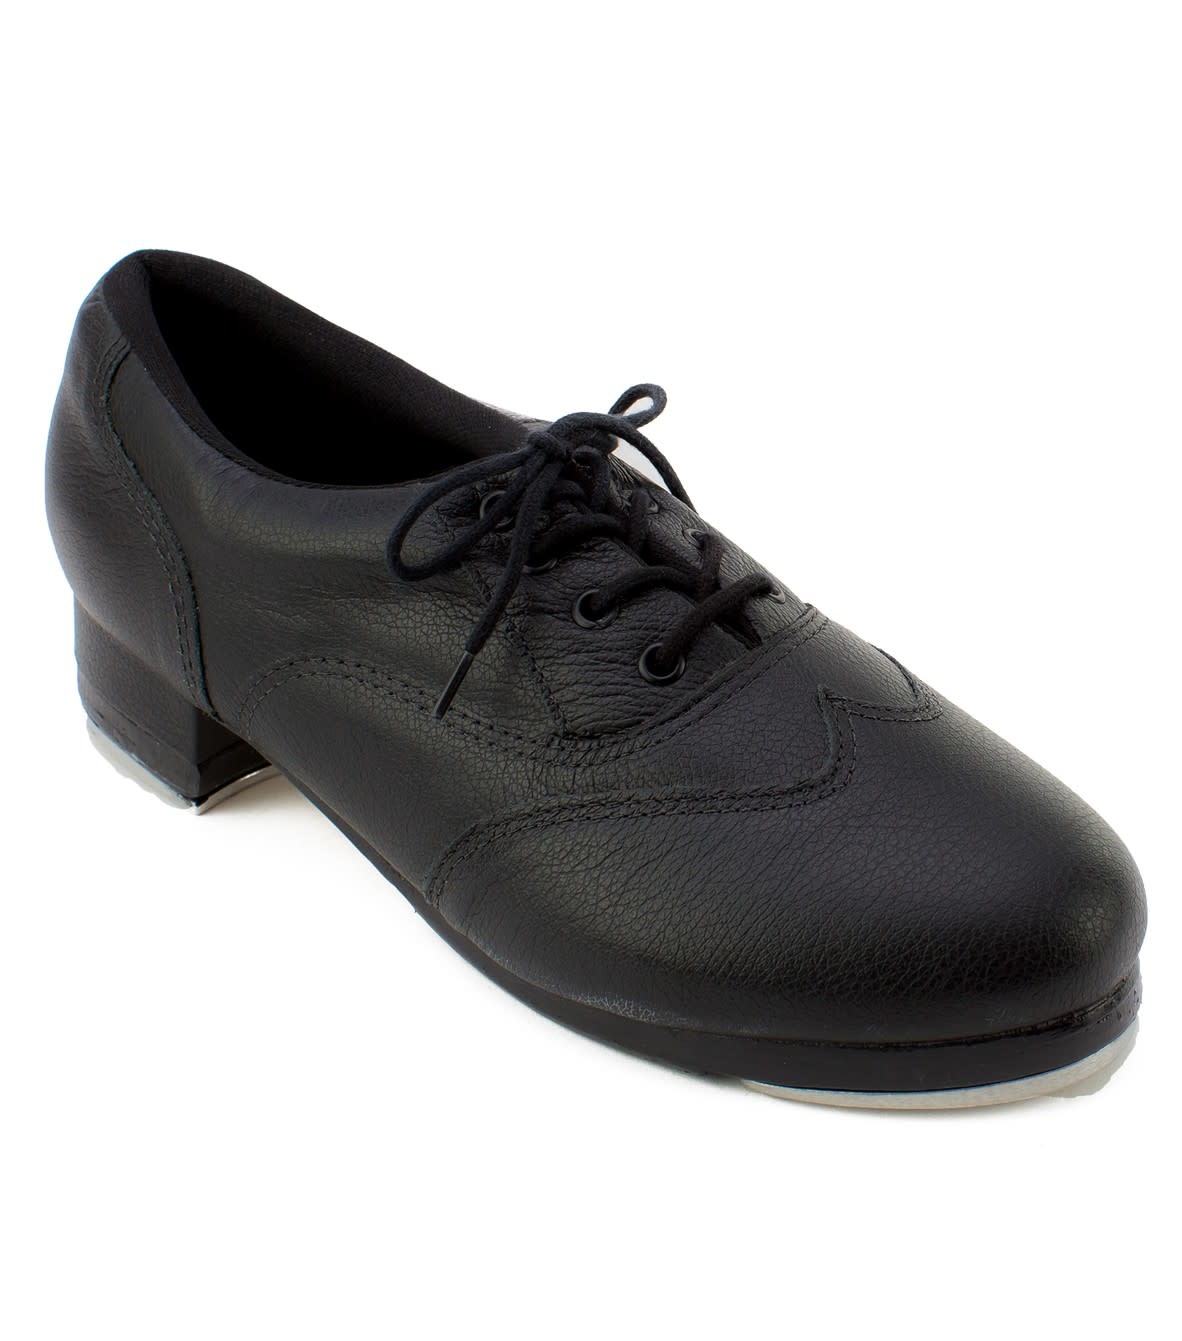 Zenith Tap Shoe TA200 by So Danca | Instep Activewear Online - Instep ...